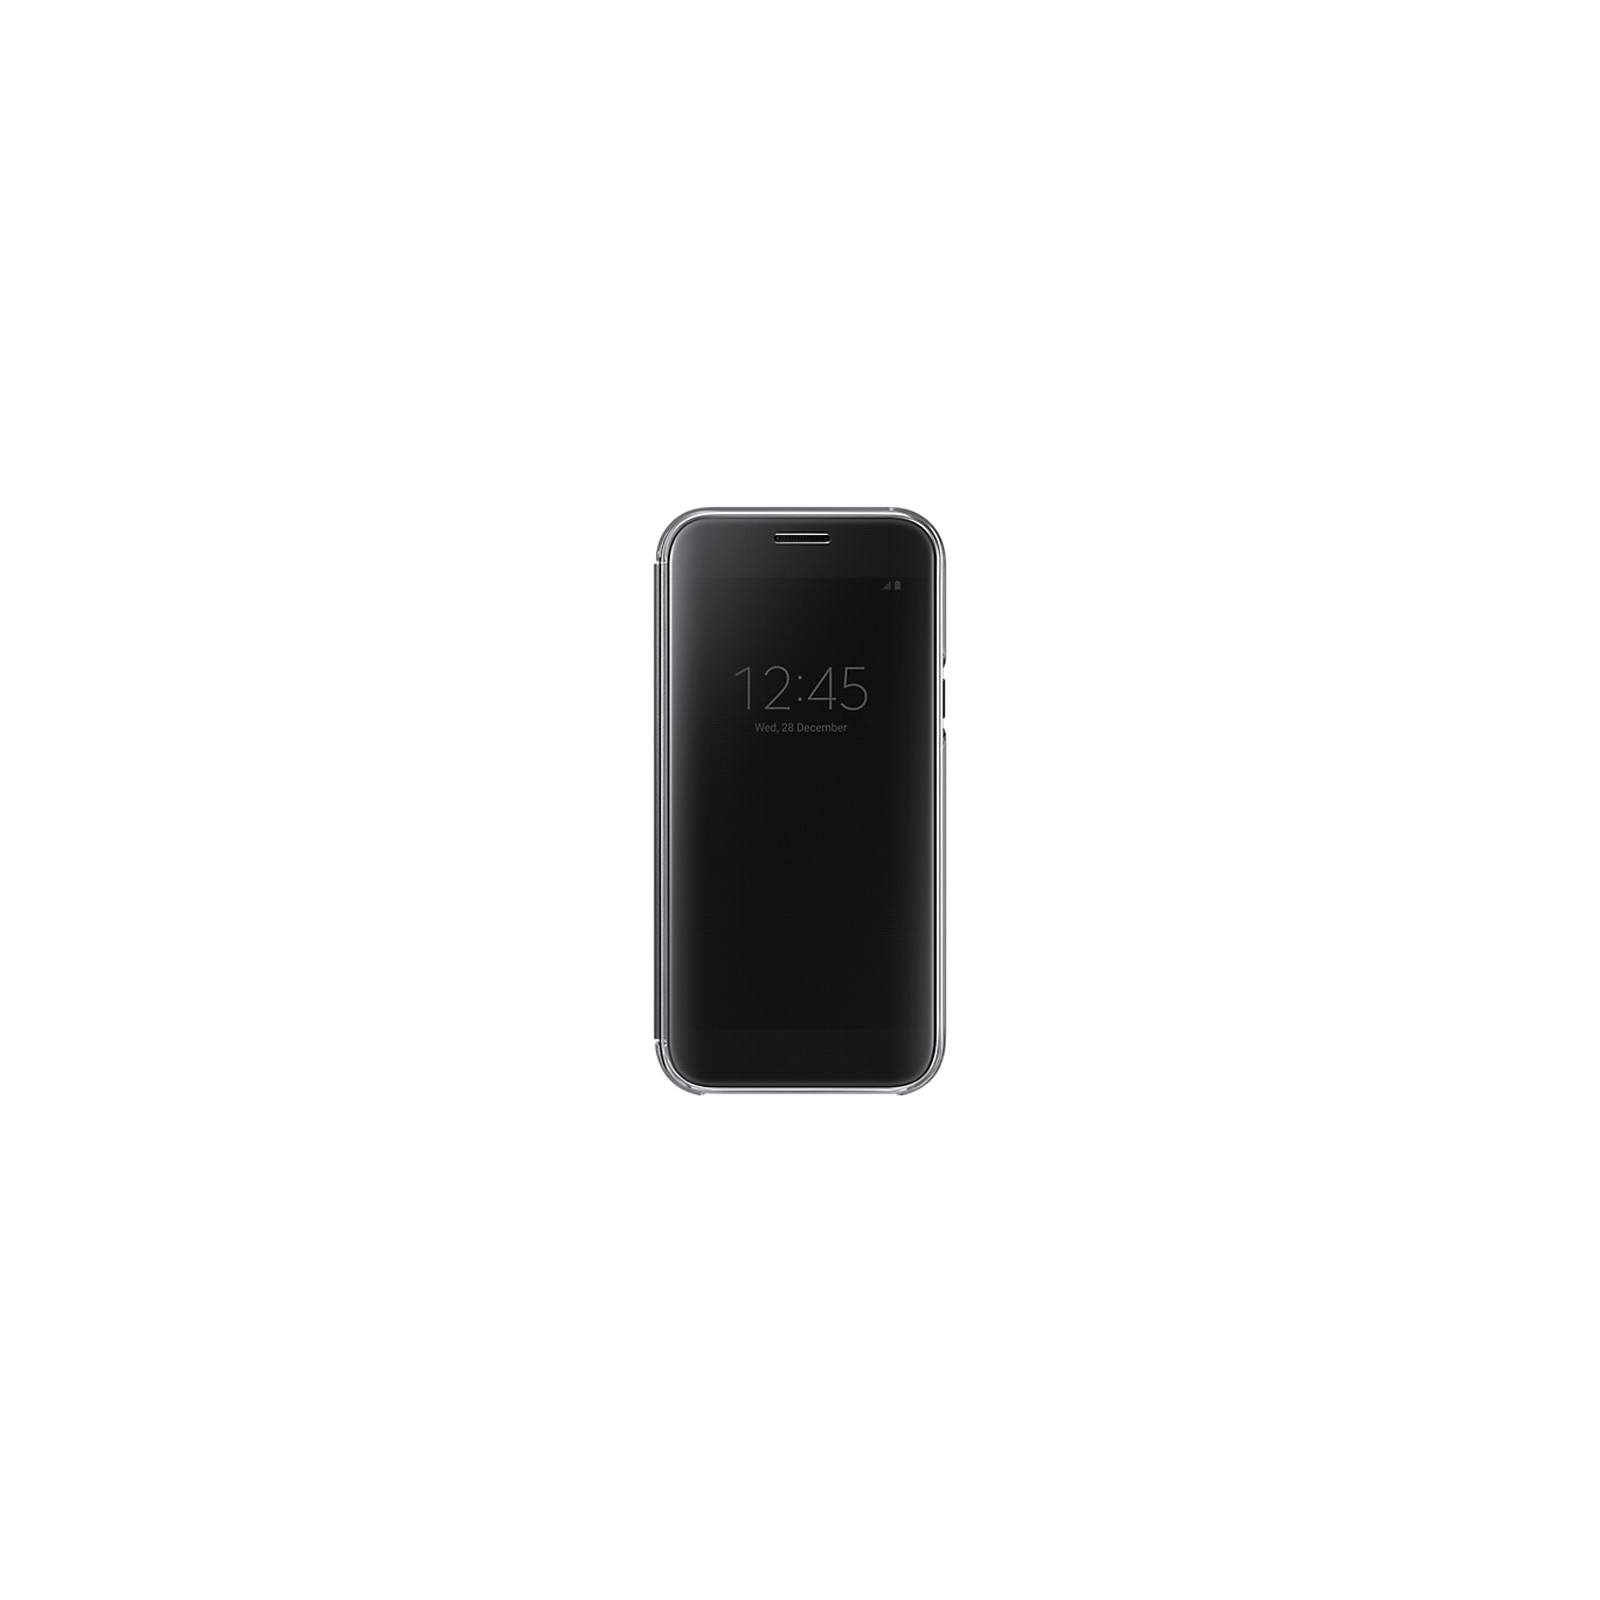 Чехол для мобильного телефона Samsung для A520 - Clear View Cover (Black) (EF-ZA520CBEGRU)